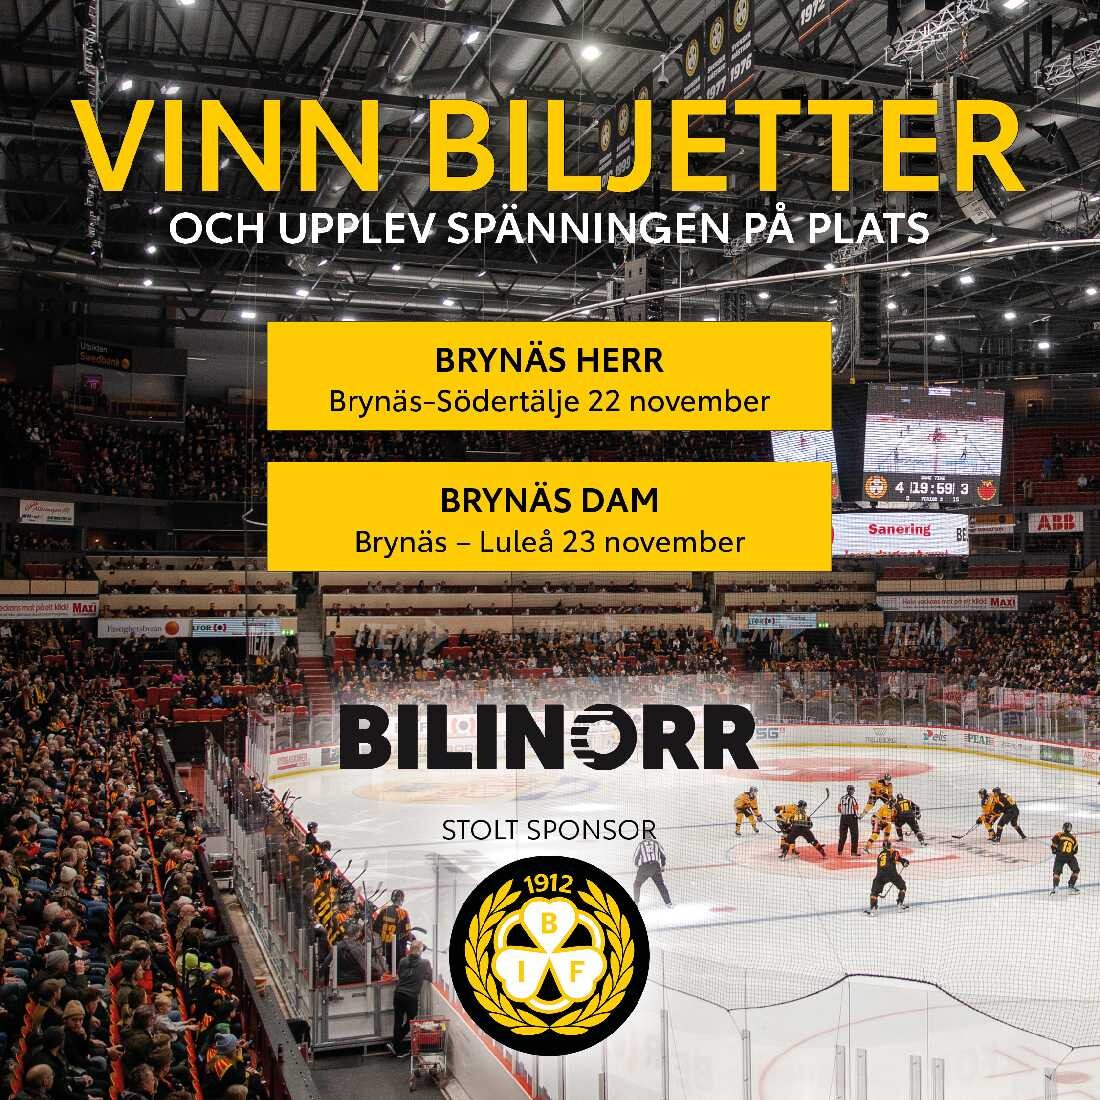 Utlottning av Brynäs Hockeybiljetter hos Toyota Gävle.